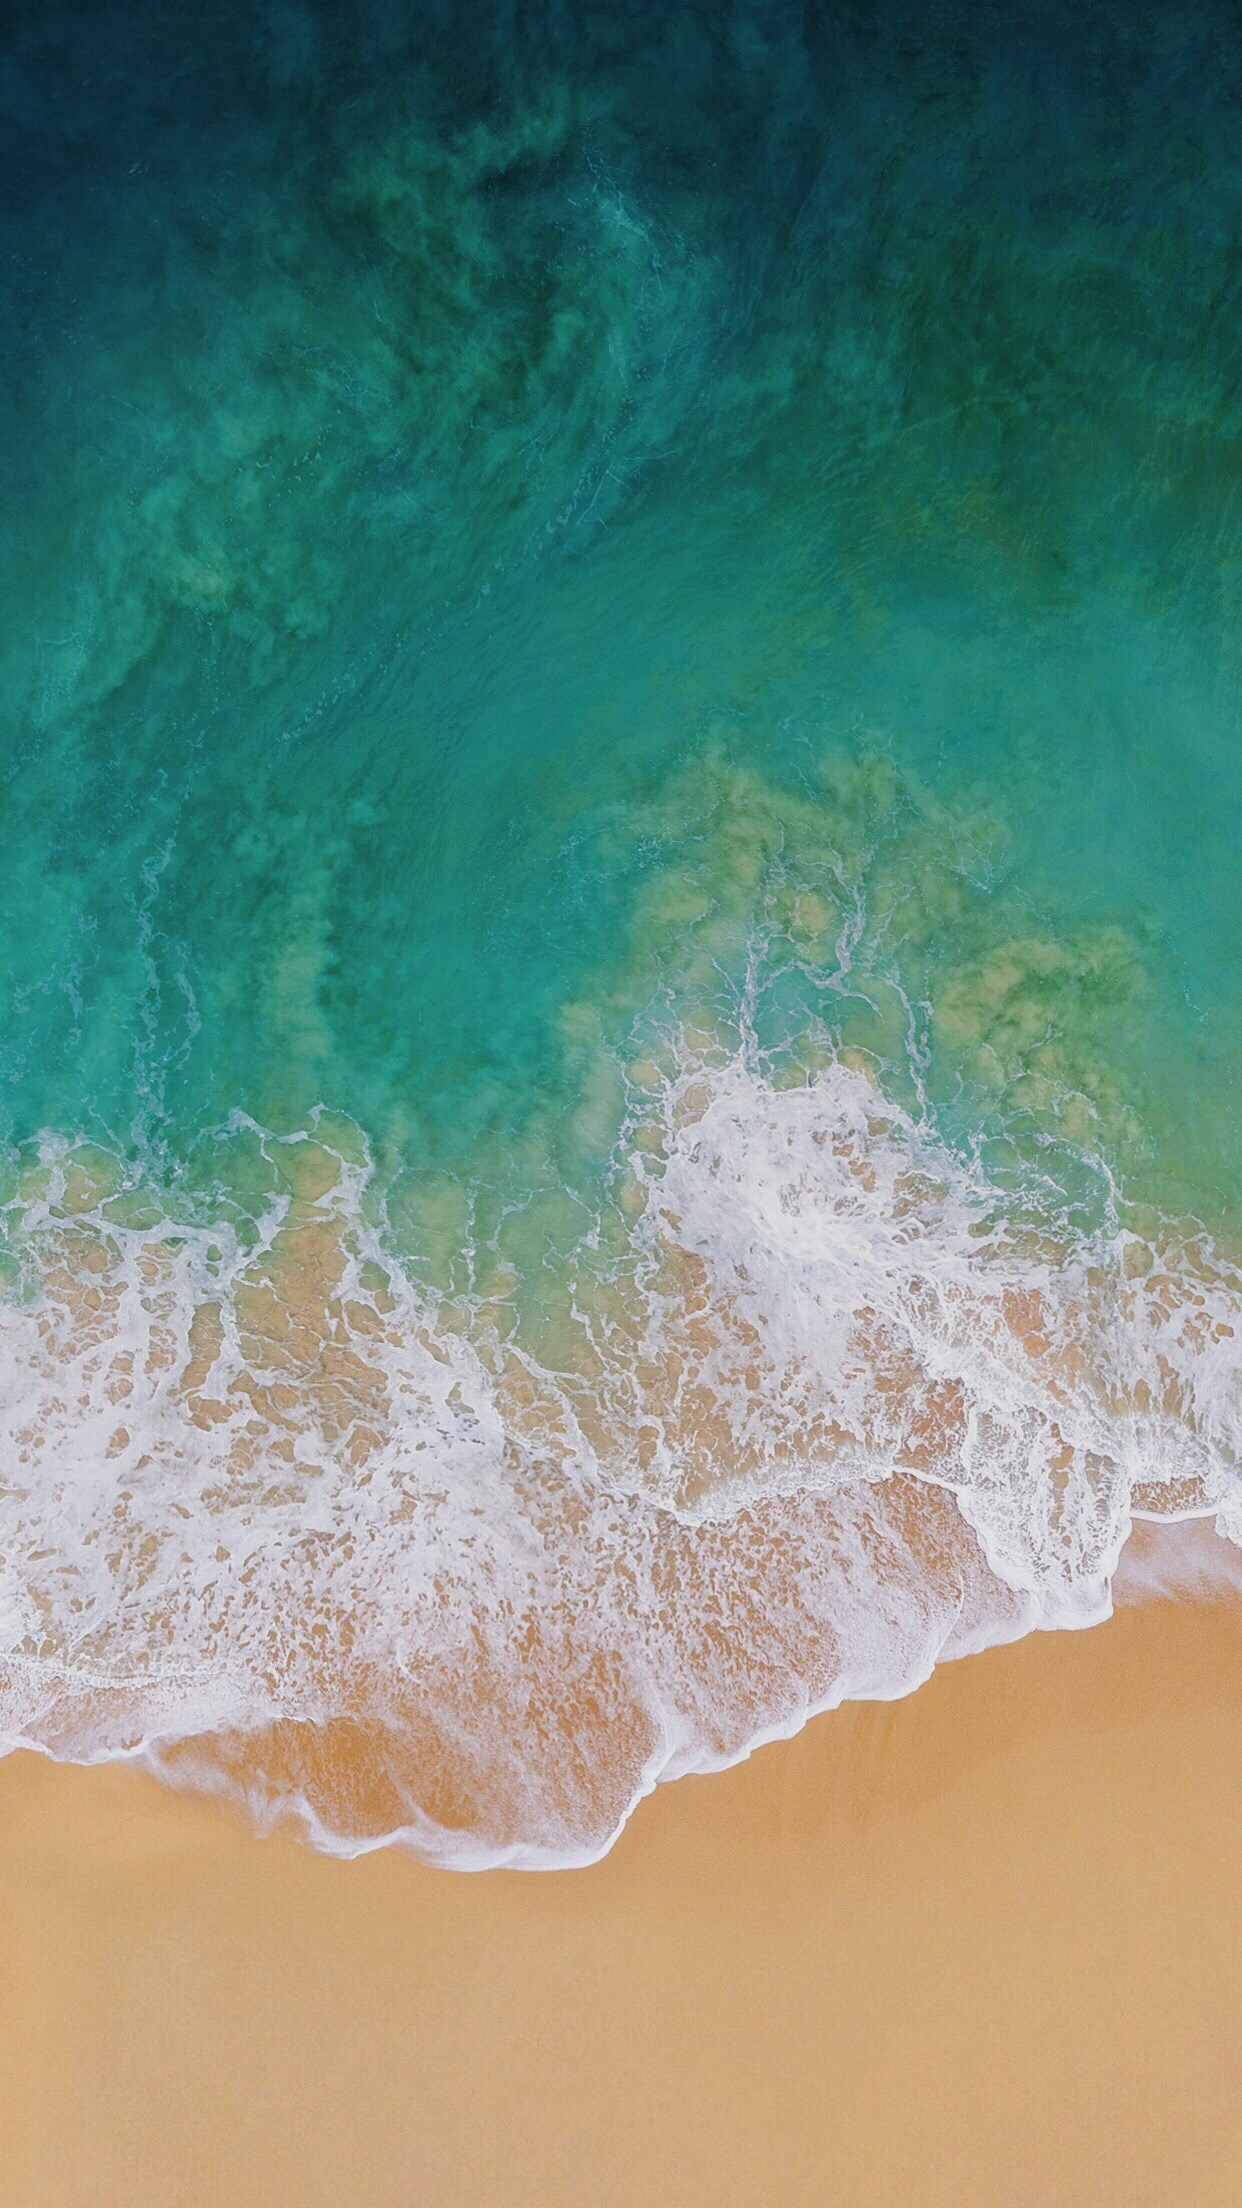 Tải về ngay hình nền mặc định của iOS 11 để trải nghiệm một trình đơn đẹp mắt và tuyệt vời nhất trên chiếc điện thoại của bạn. Hình ảnh đẹp mắt này sẽ mang lại cho bạn một khoảng thời gian tuyệt vời và khiến bạn cảm thấy thư giãn.